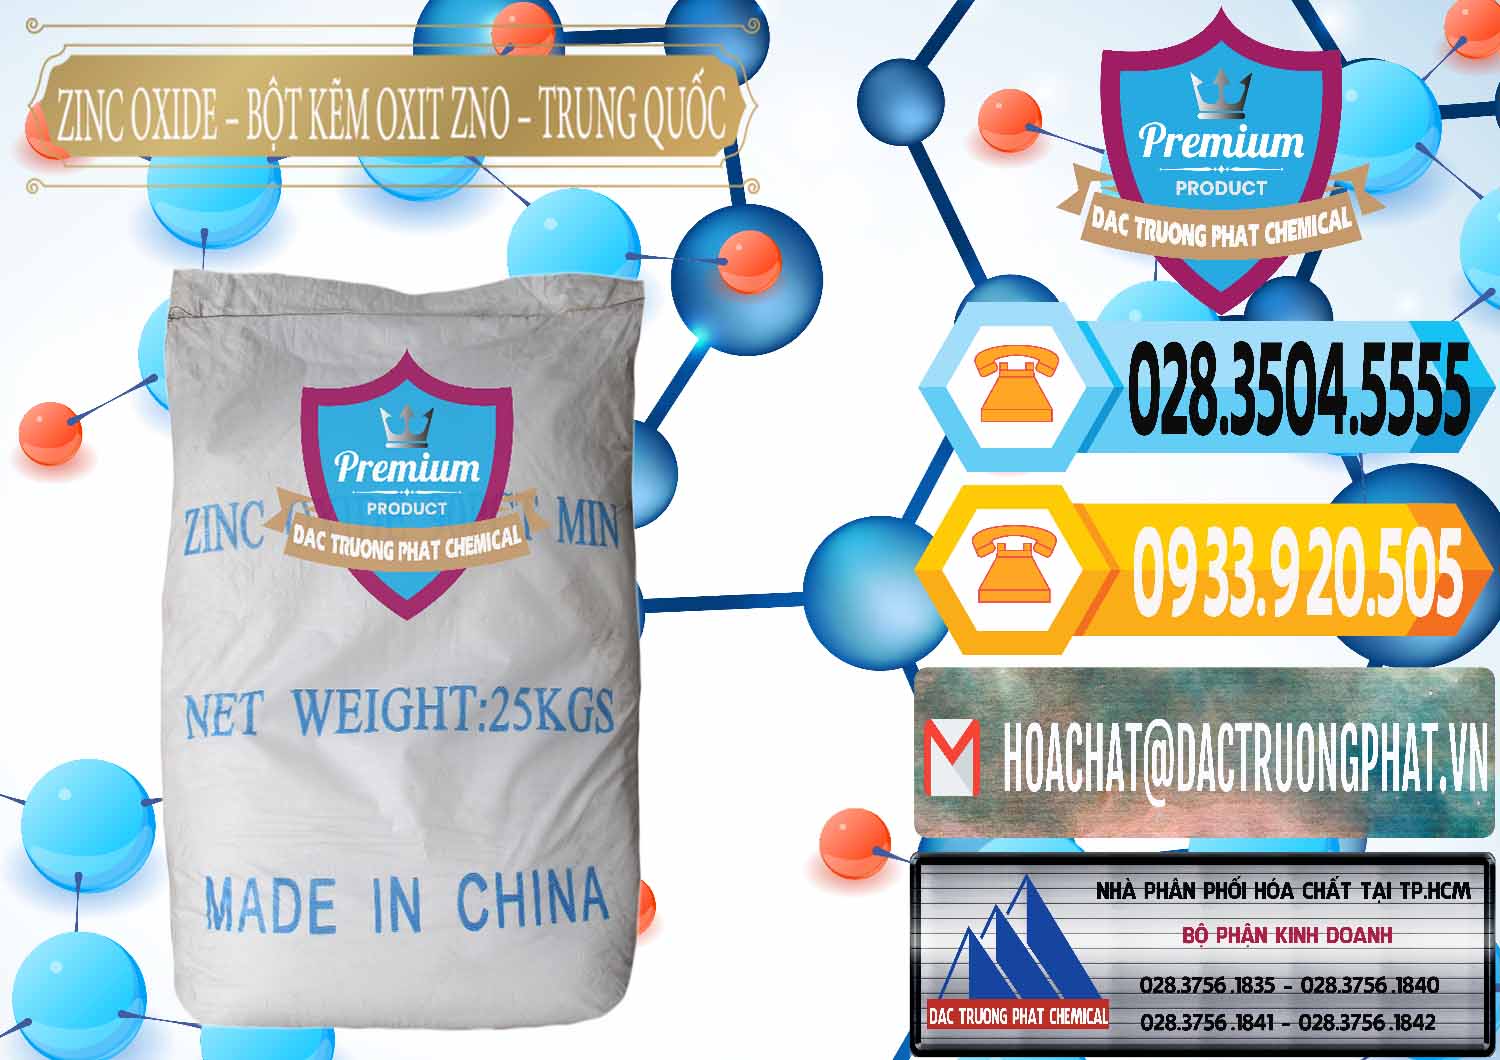 Nơi chuyên bán - phân phối Zinc Oxide - Bột Kẽm Oxit ZNO Trung Quốc China - 0182 - Kinh doanh ( phân phối ) hóa chất tại TP.HCM - hoachattayrua.net